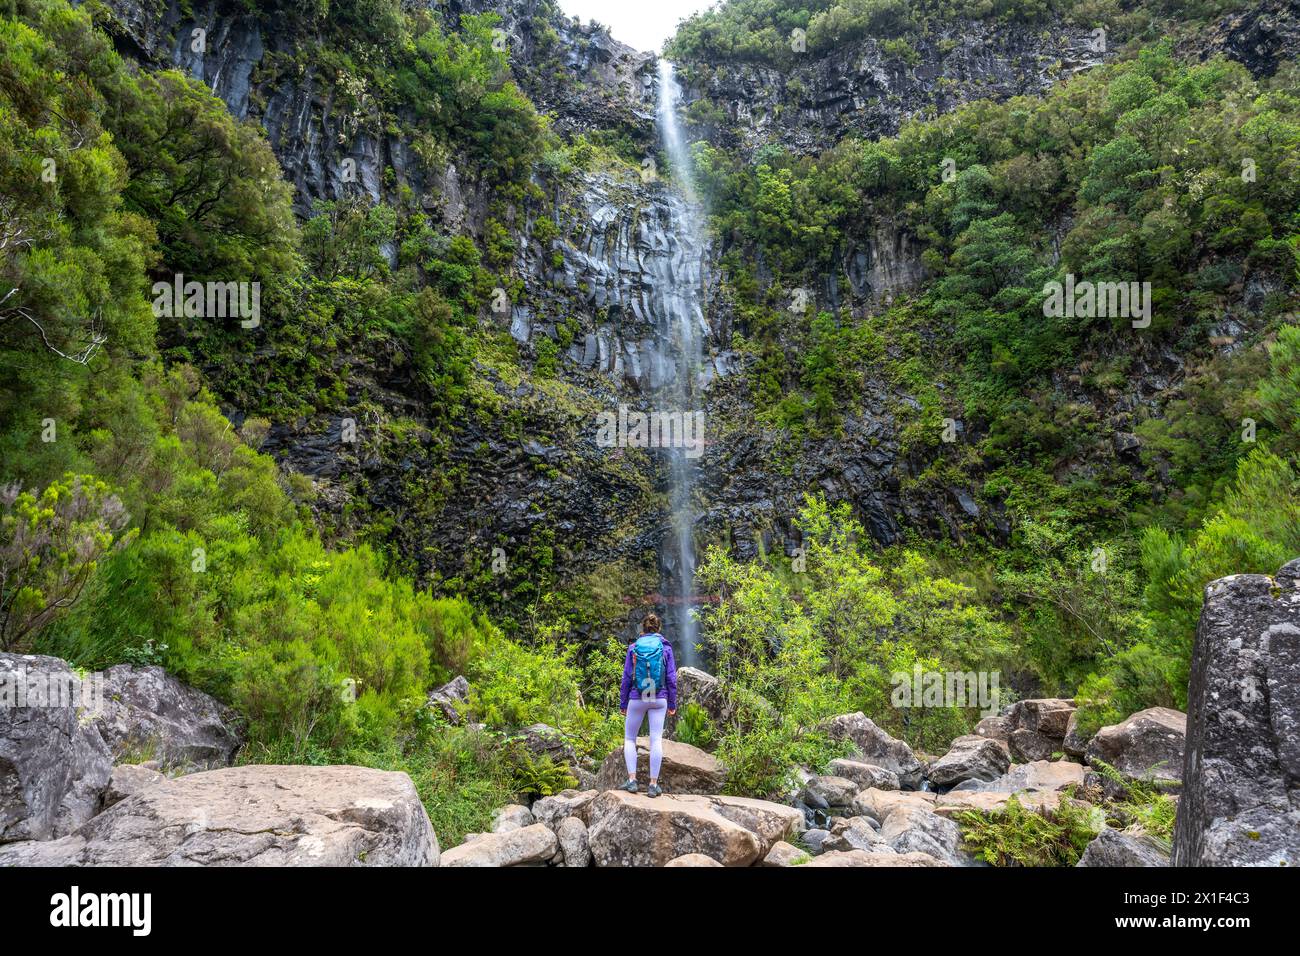 Description : femme touriste avec sac à dos profite de l'atmosphère à la chute d'eau tombant de haut mur de roche. Cascade de Lagoa do Vento, île de Madère, Portug Banque D'Images